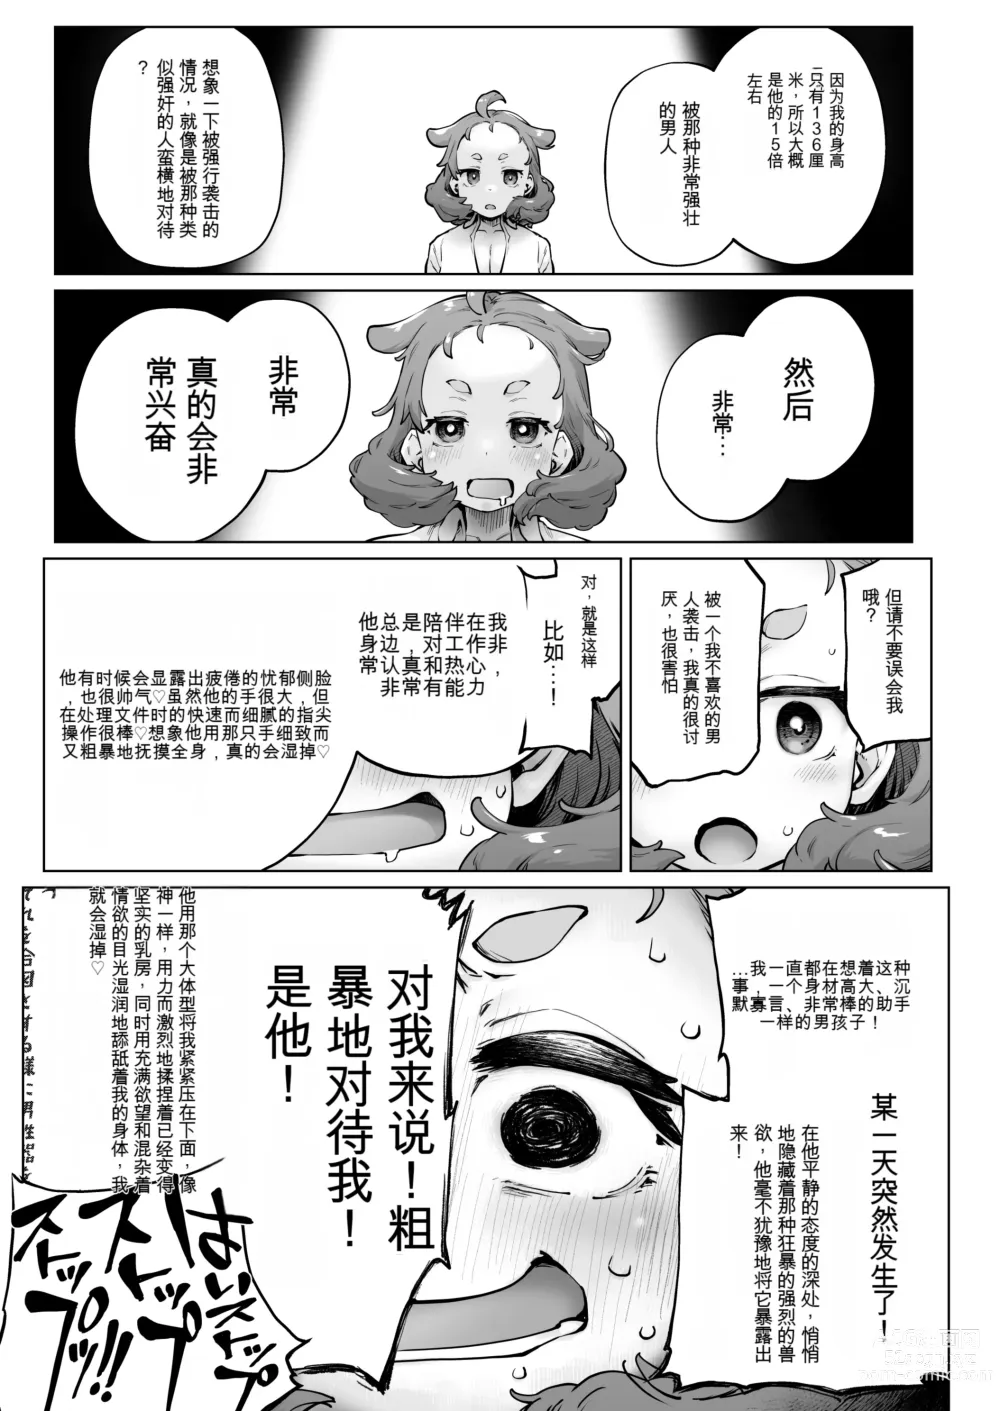 Page 11 of doujinshi Chimikko Bakunyuu Hakase no Seiheki